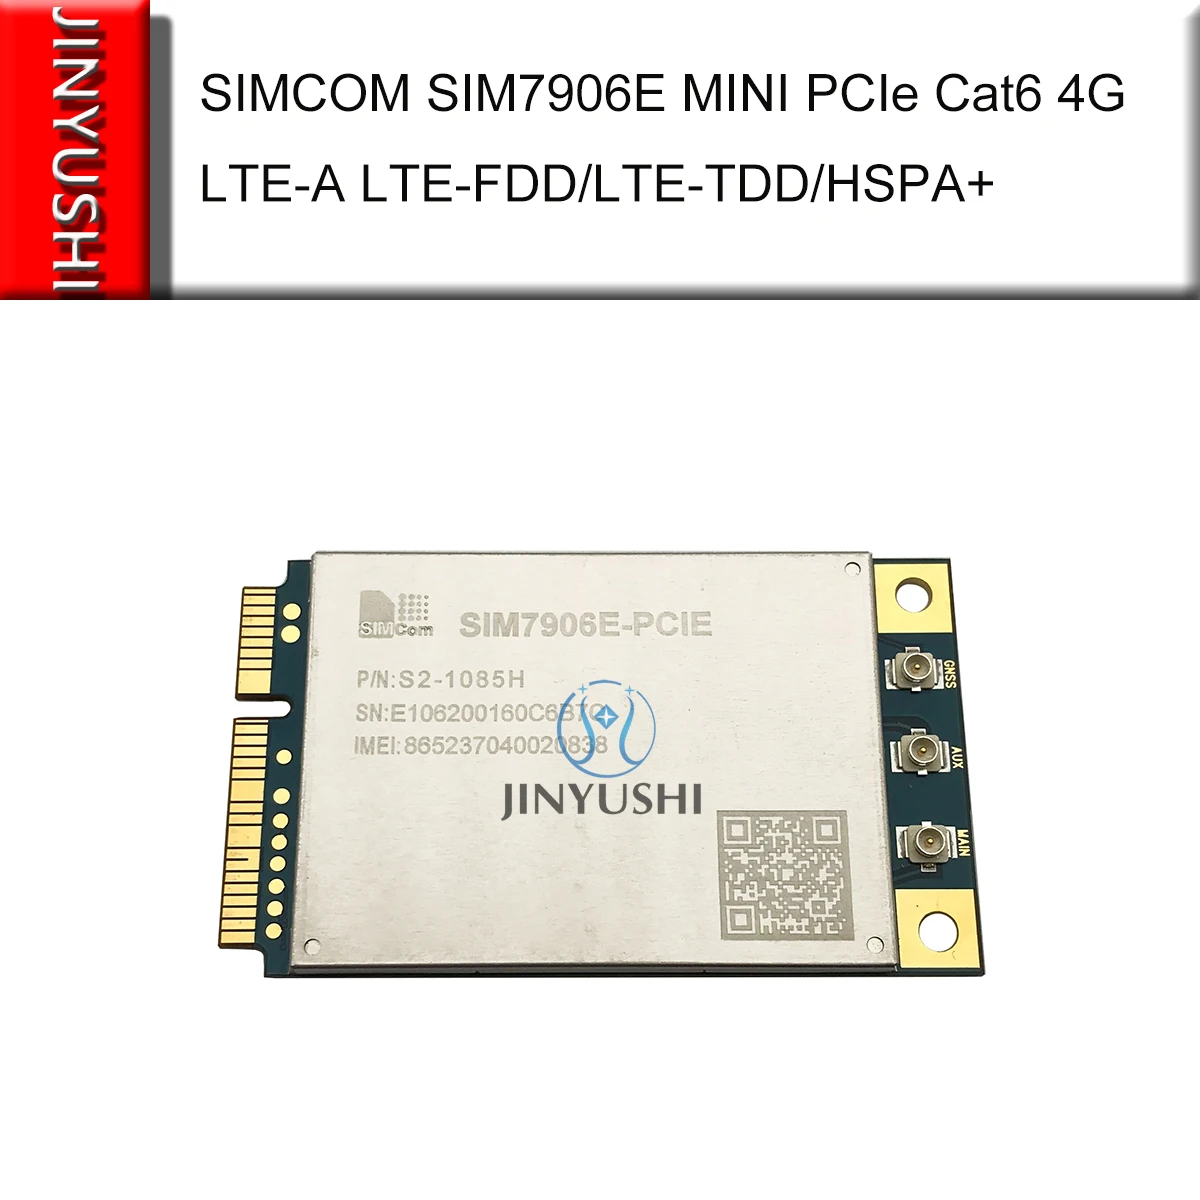 SIMCOM SIM7906E Mini Pcie cat6 4G LTE-A 300M Multi-Band LTE-FDD/LTE-TDD/HSPA+ GNSS wireless M2M module SIM7906E-PCIE